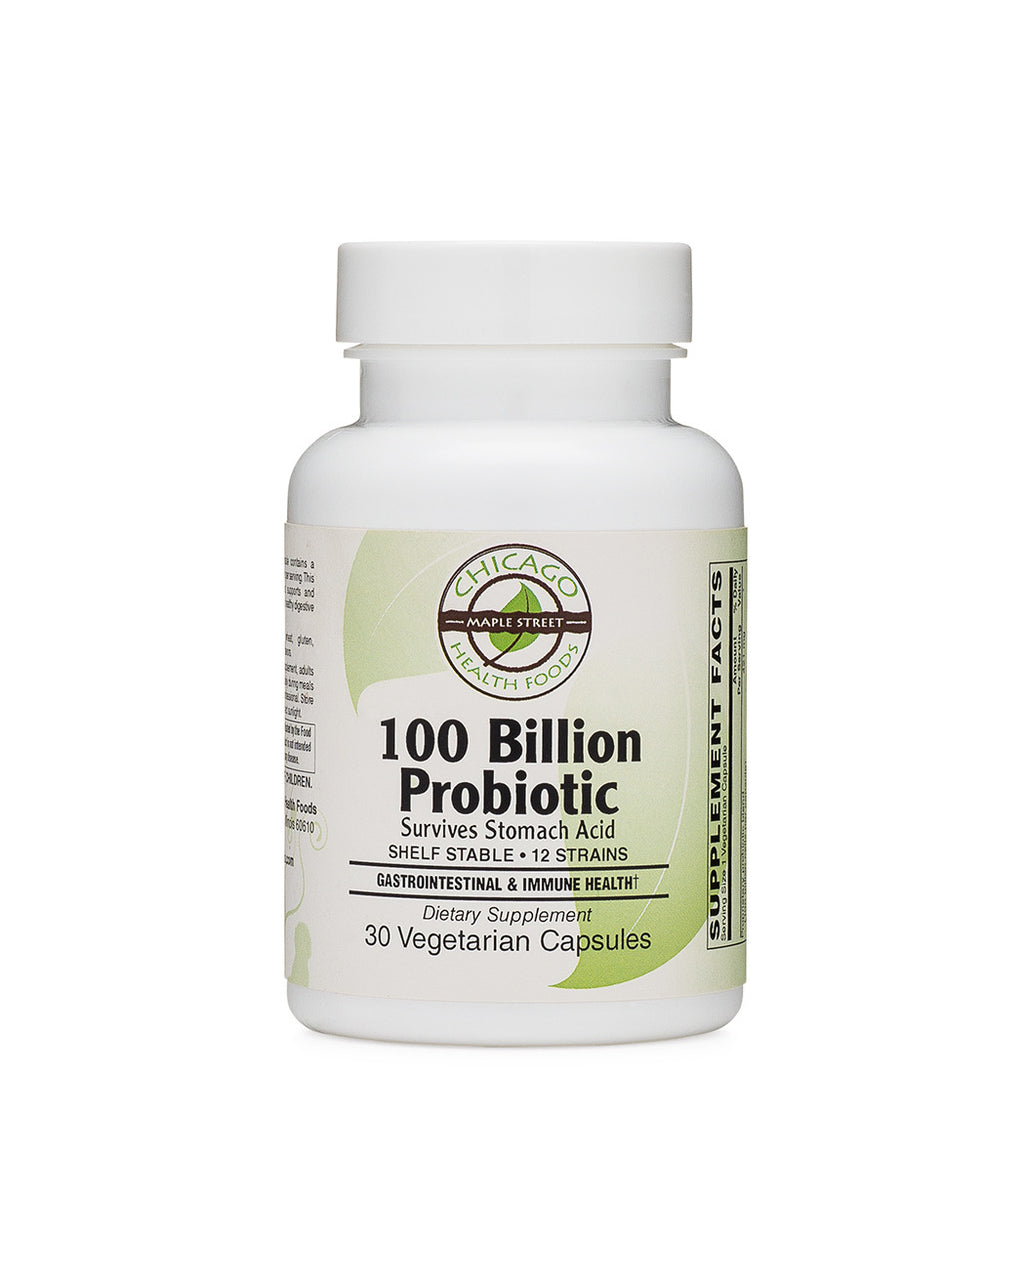 100 Billion Probiotic supplement Chicago Health